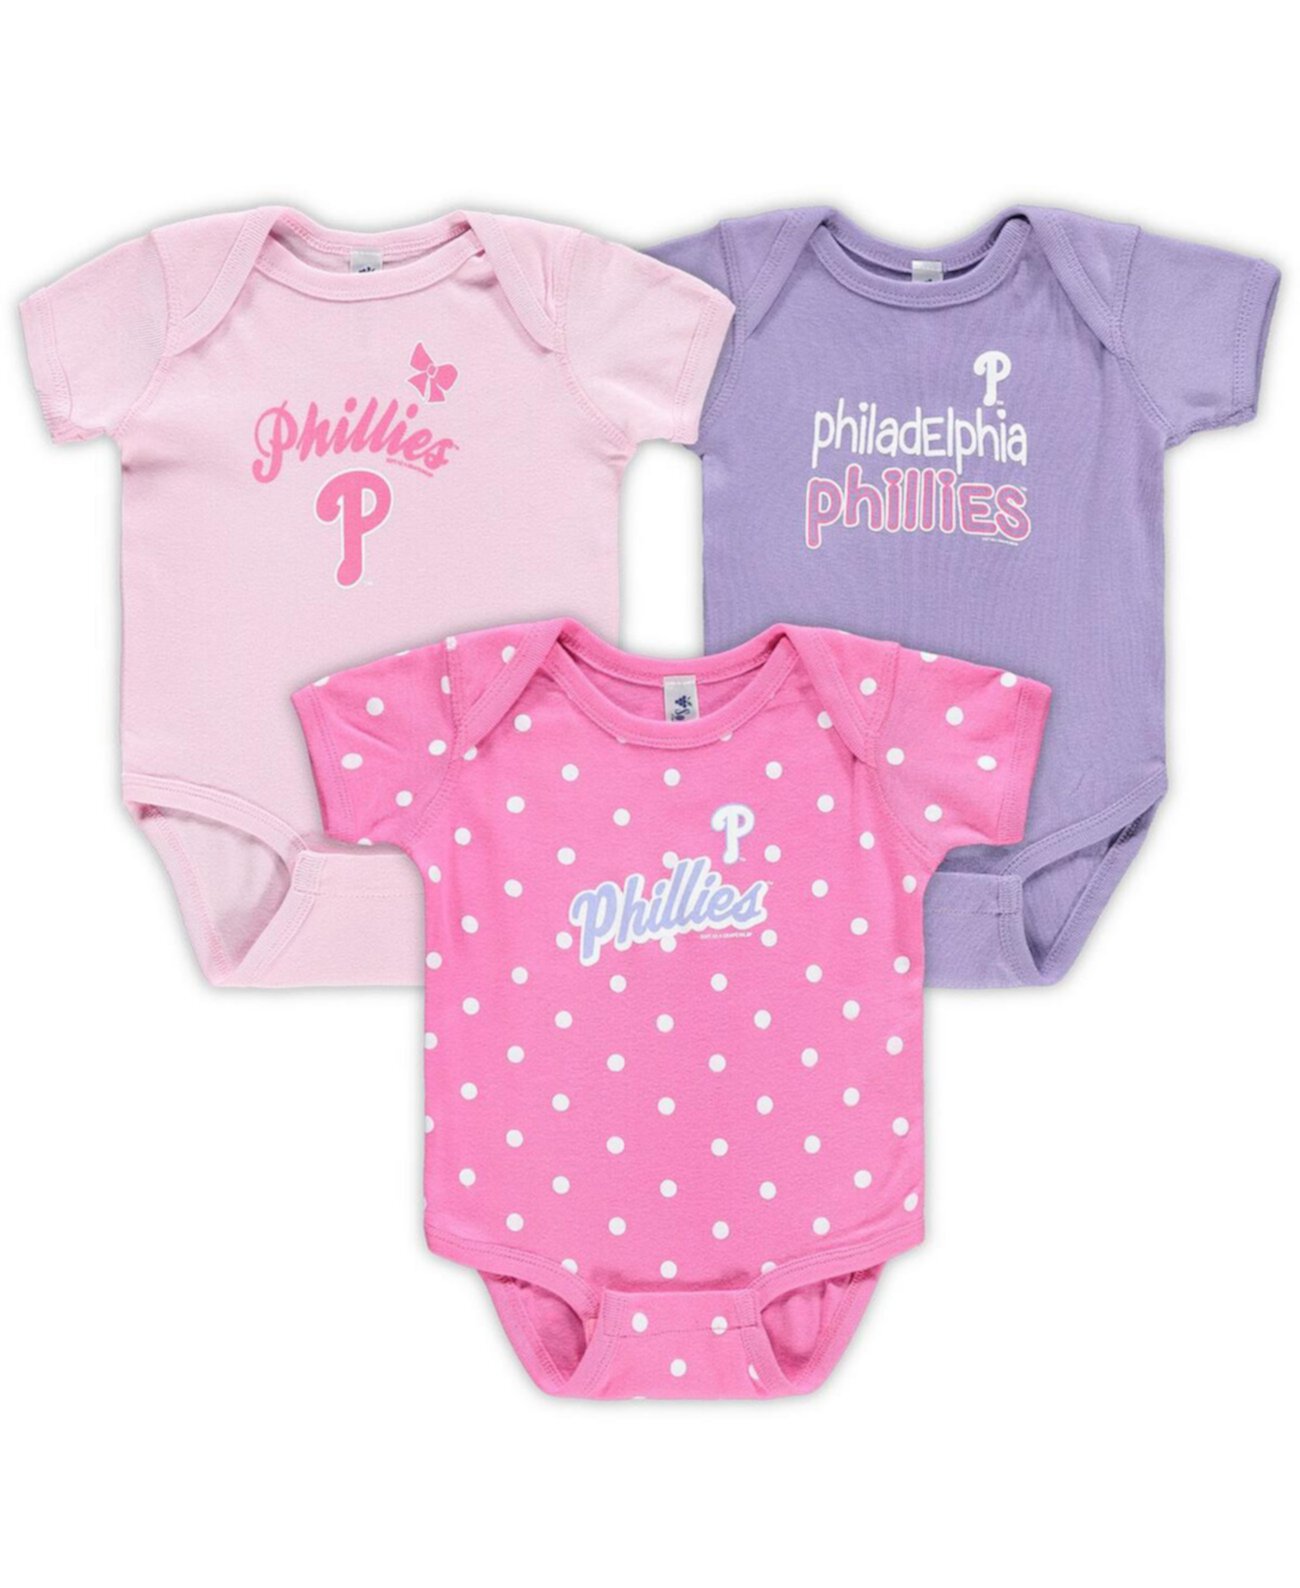 Младенческие мальчики и девочки, розовый, фиолетовый Philadelphia Phillies Rookie Creeper, 3 шт. в упаковке Soft As A Grape